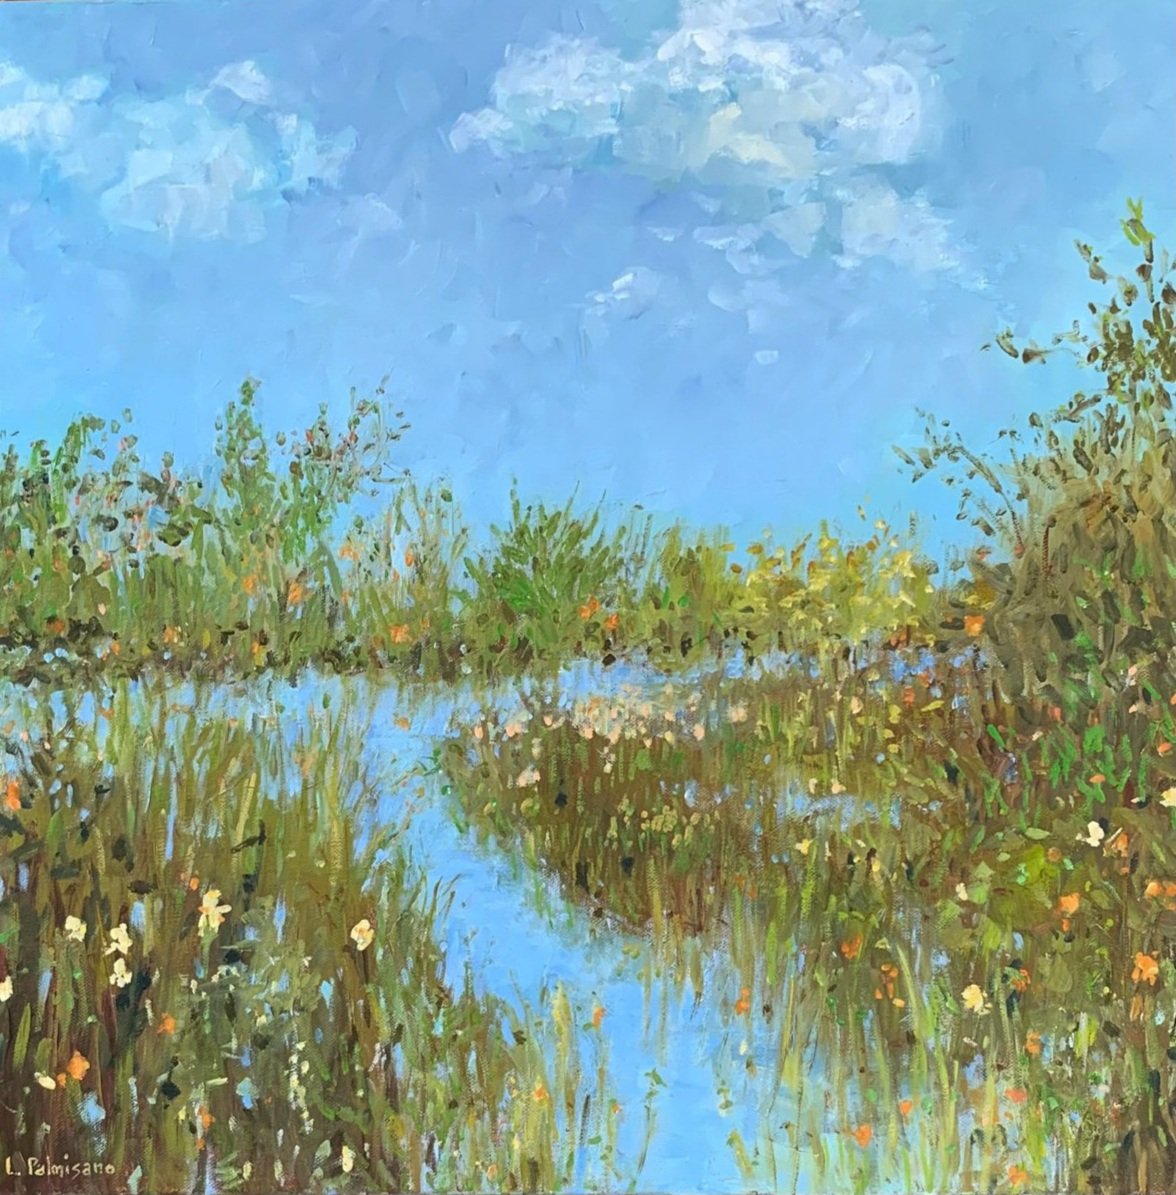    Marsh Swathe   , Oil on canvas, 20x20, 21 x 21 Gold Framed $1200  